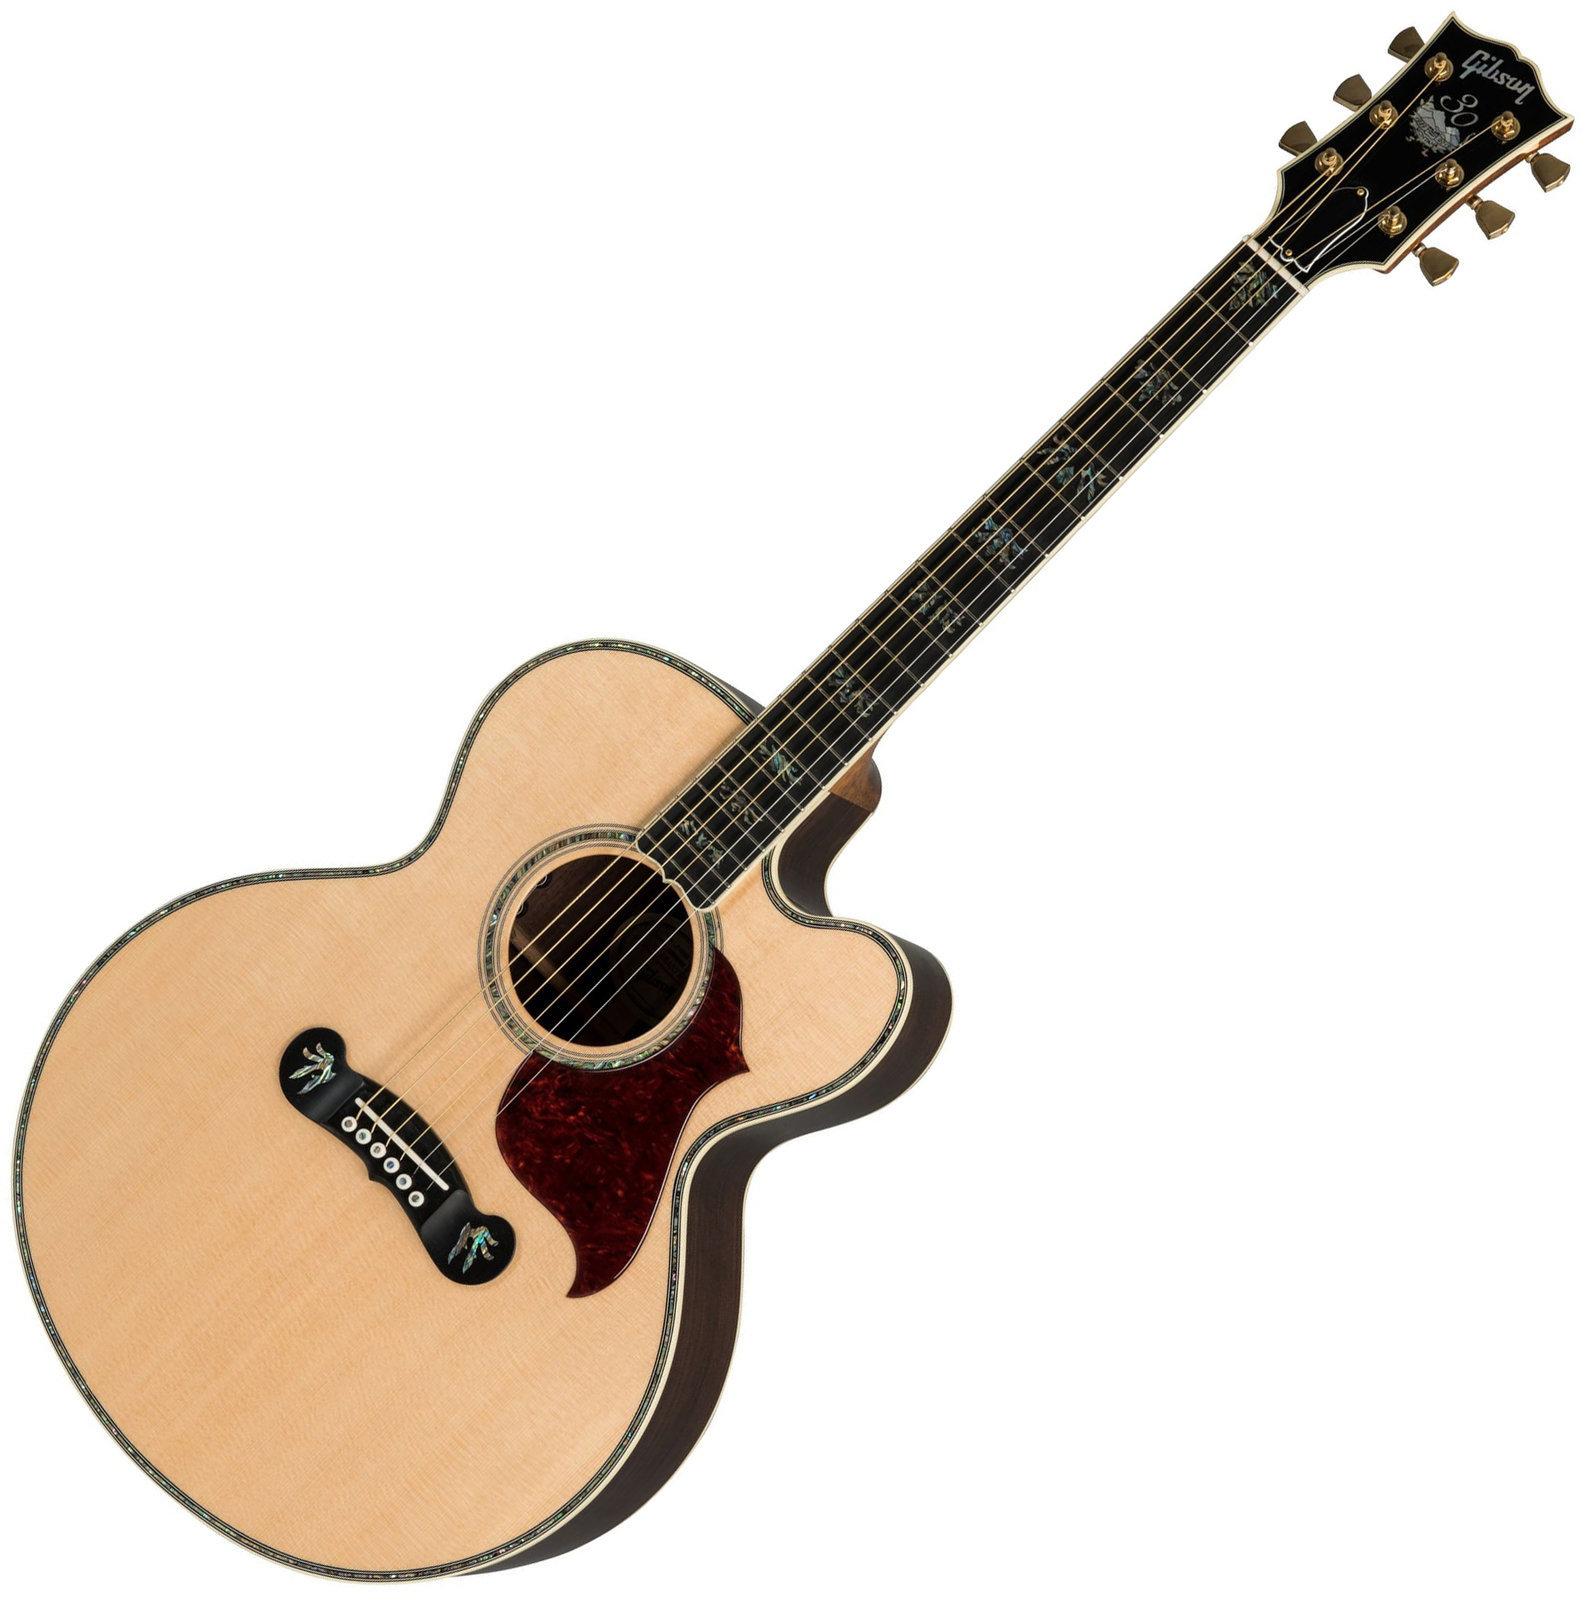 Jumbo elektro-akoestische gitaar Gibson J-2000 2019 Antique Natural